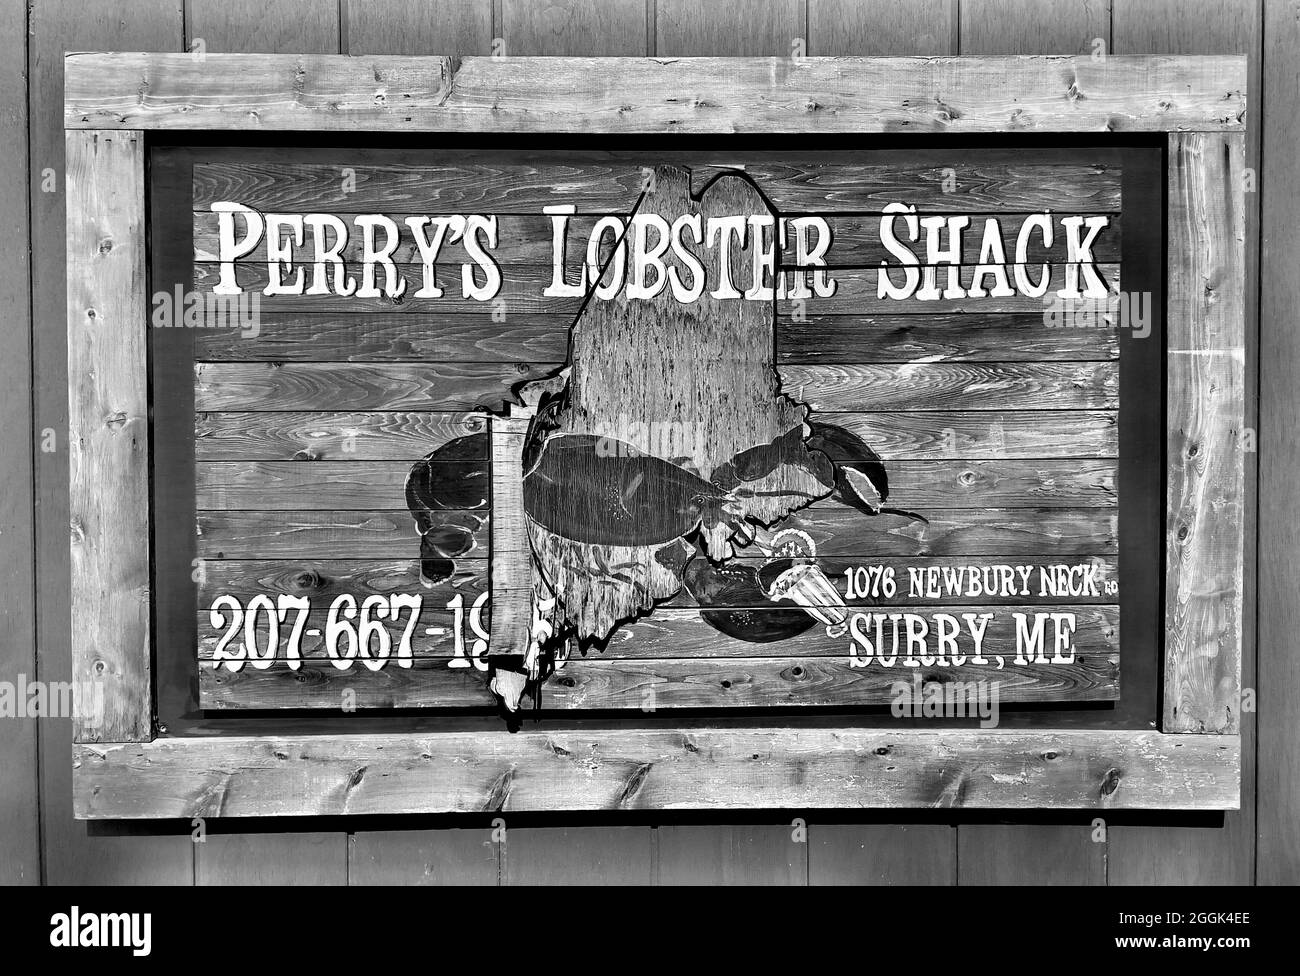 Wetterschild aus Holz für Perry’s Lobster Shack ist eine Low-Key-Hütte am Wasser, die Hummer- und Seafood-Gerichte sowie herzhafte Beilagen und Biere anbietet. Stockfoto